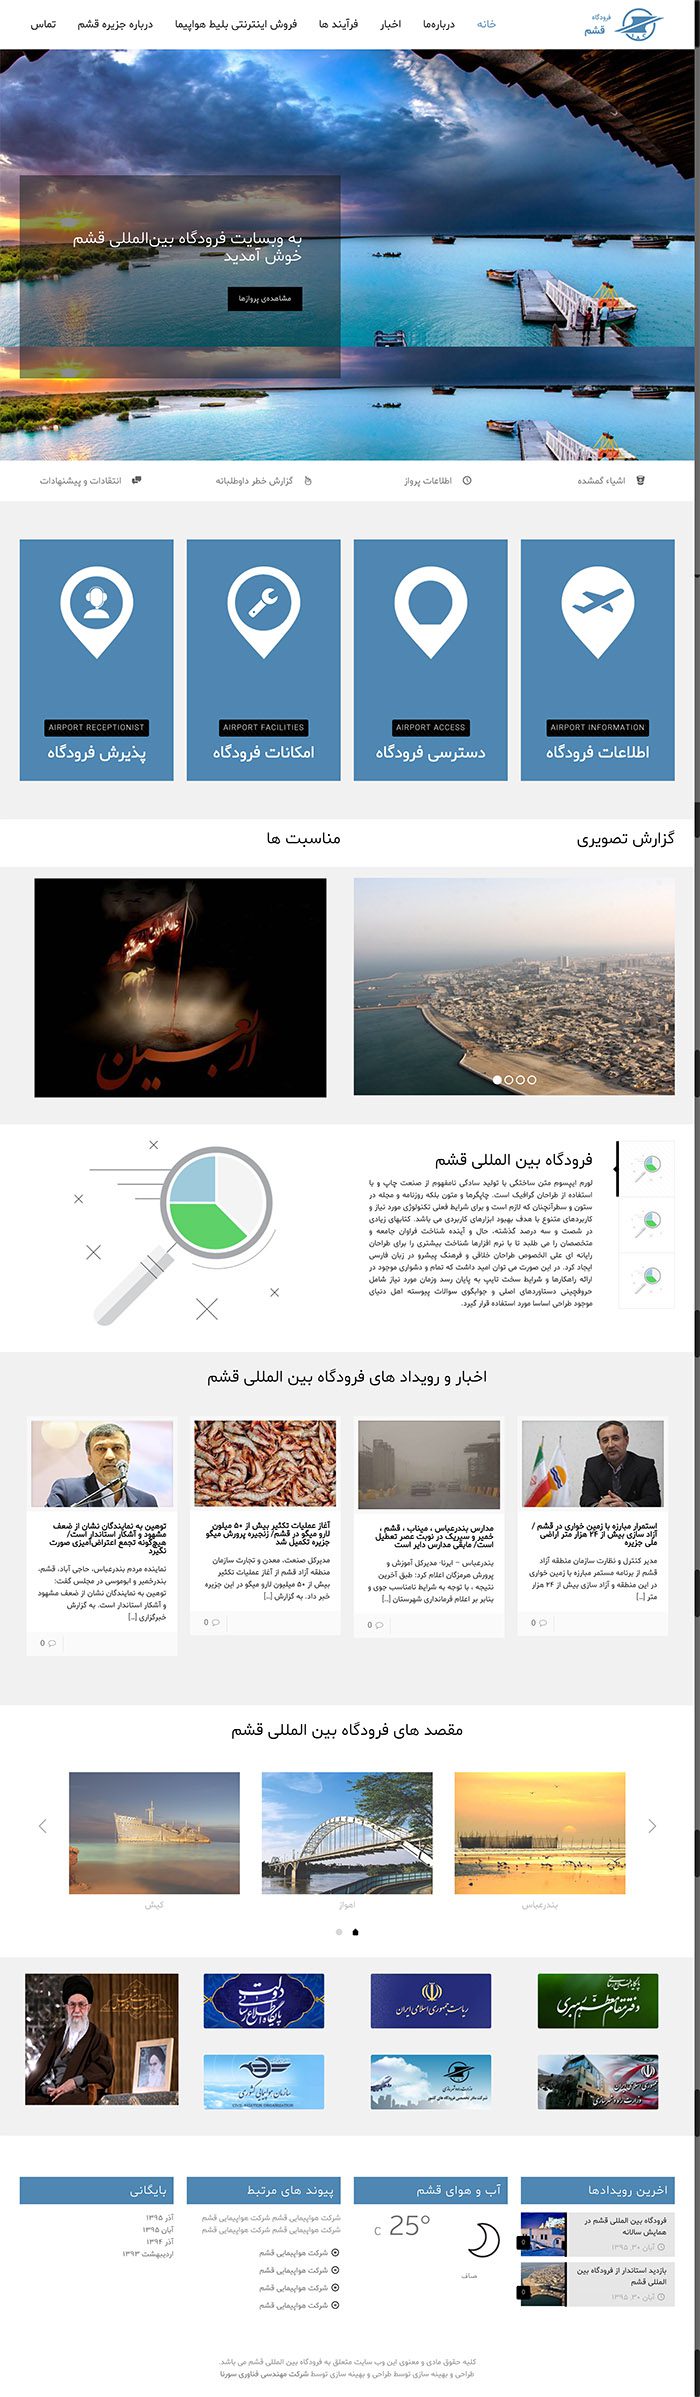 طراحی وبسایت فرودگاه بین المللی قشم توسط شرکت طراحی سایت سورنا در کرمان